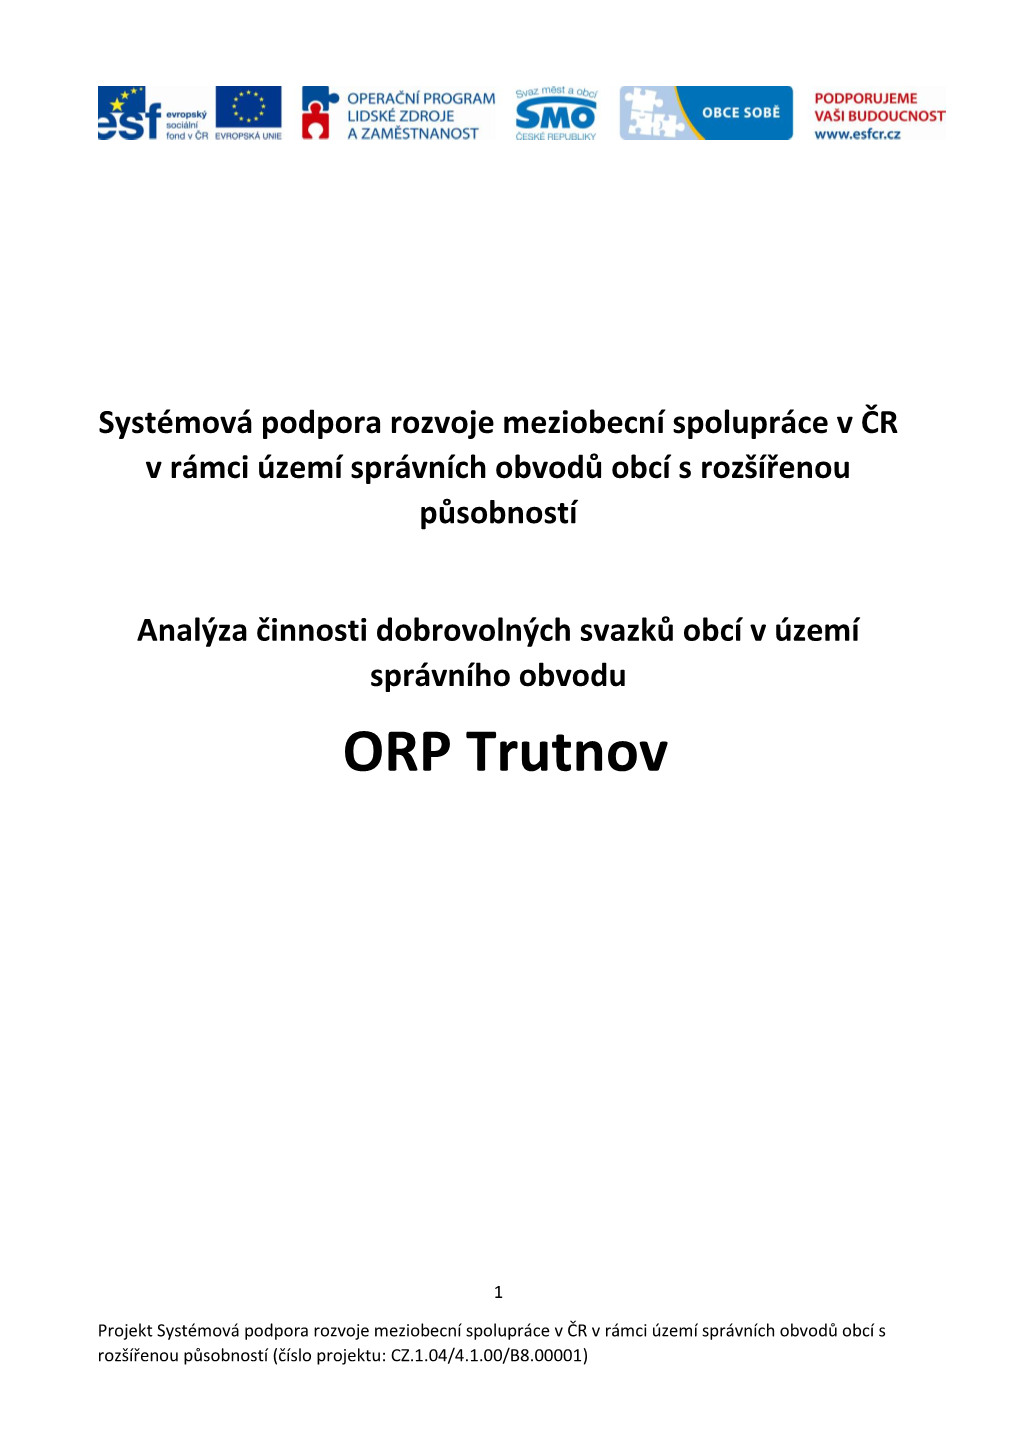 ORP Trutnov -Analýza DSO.Pdf